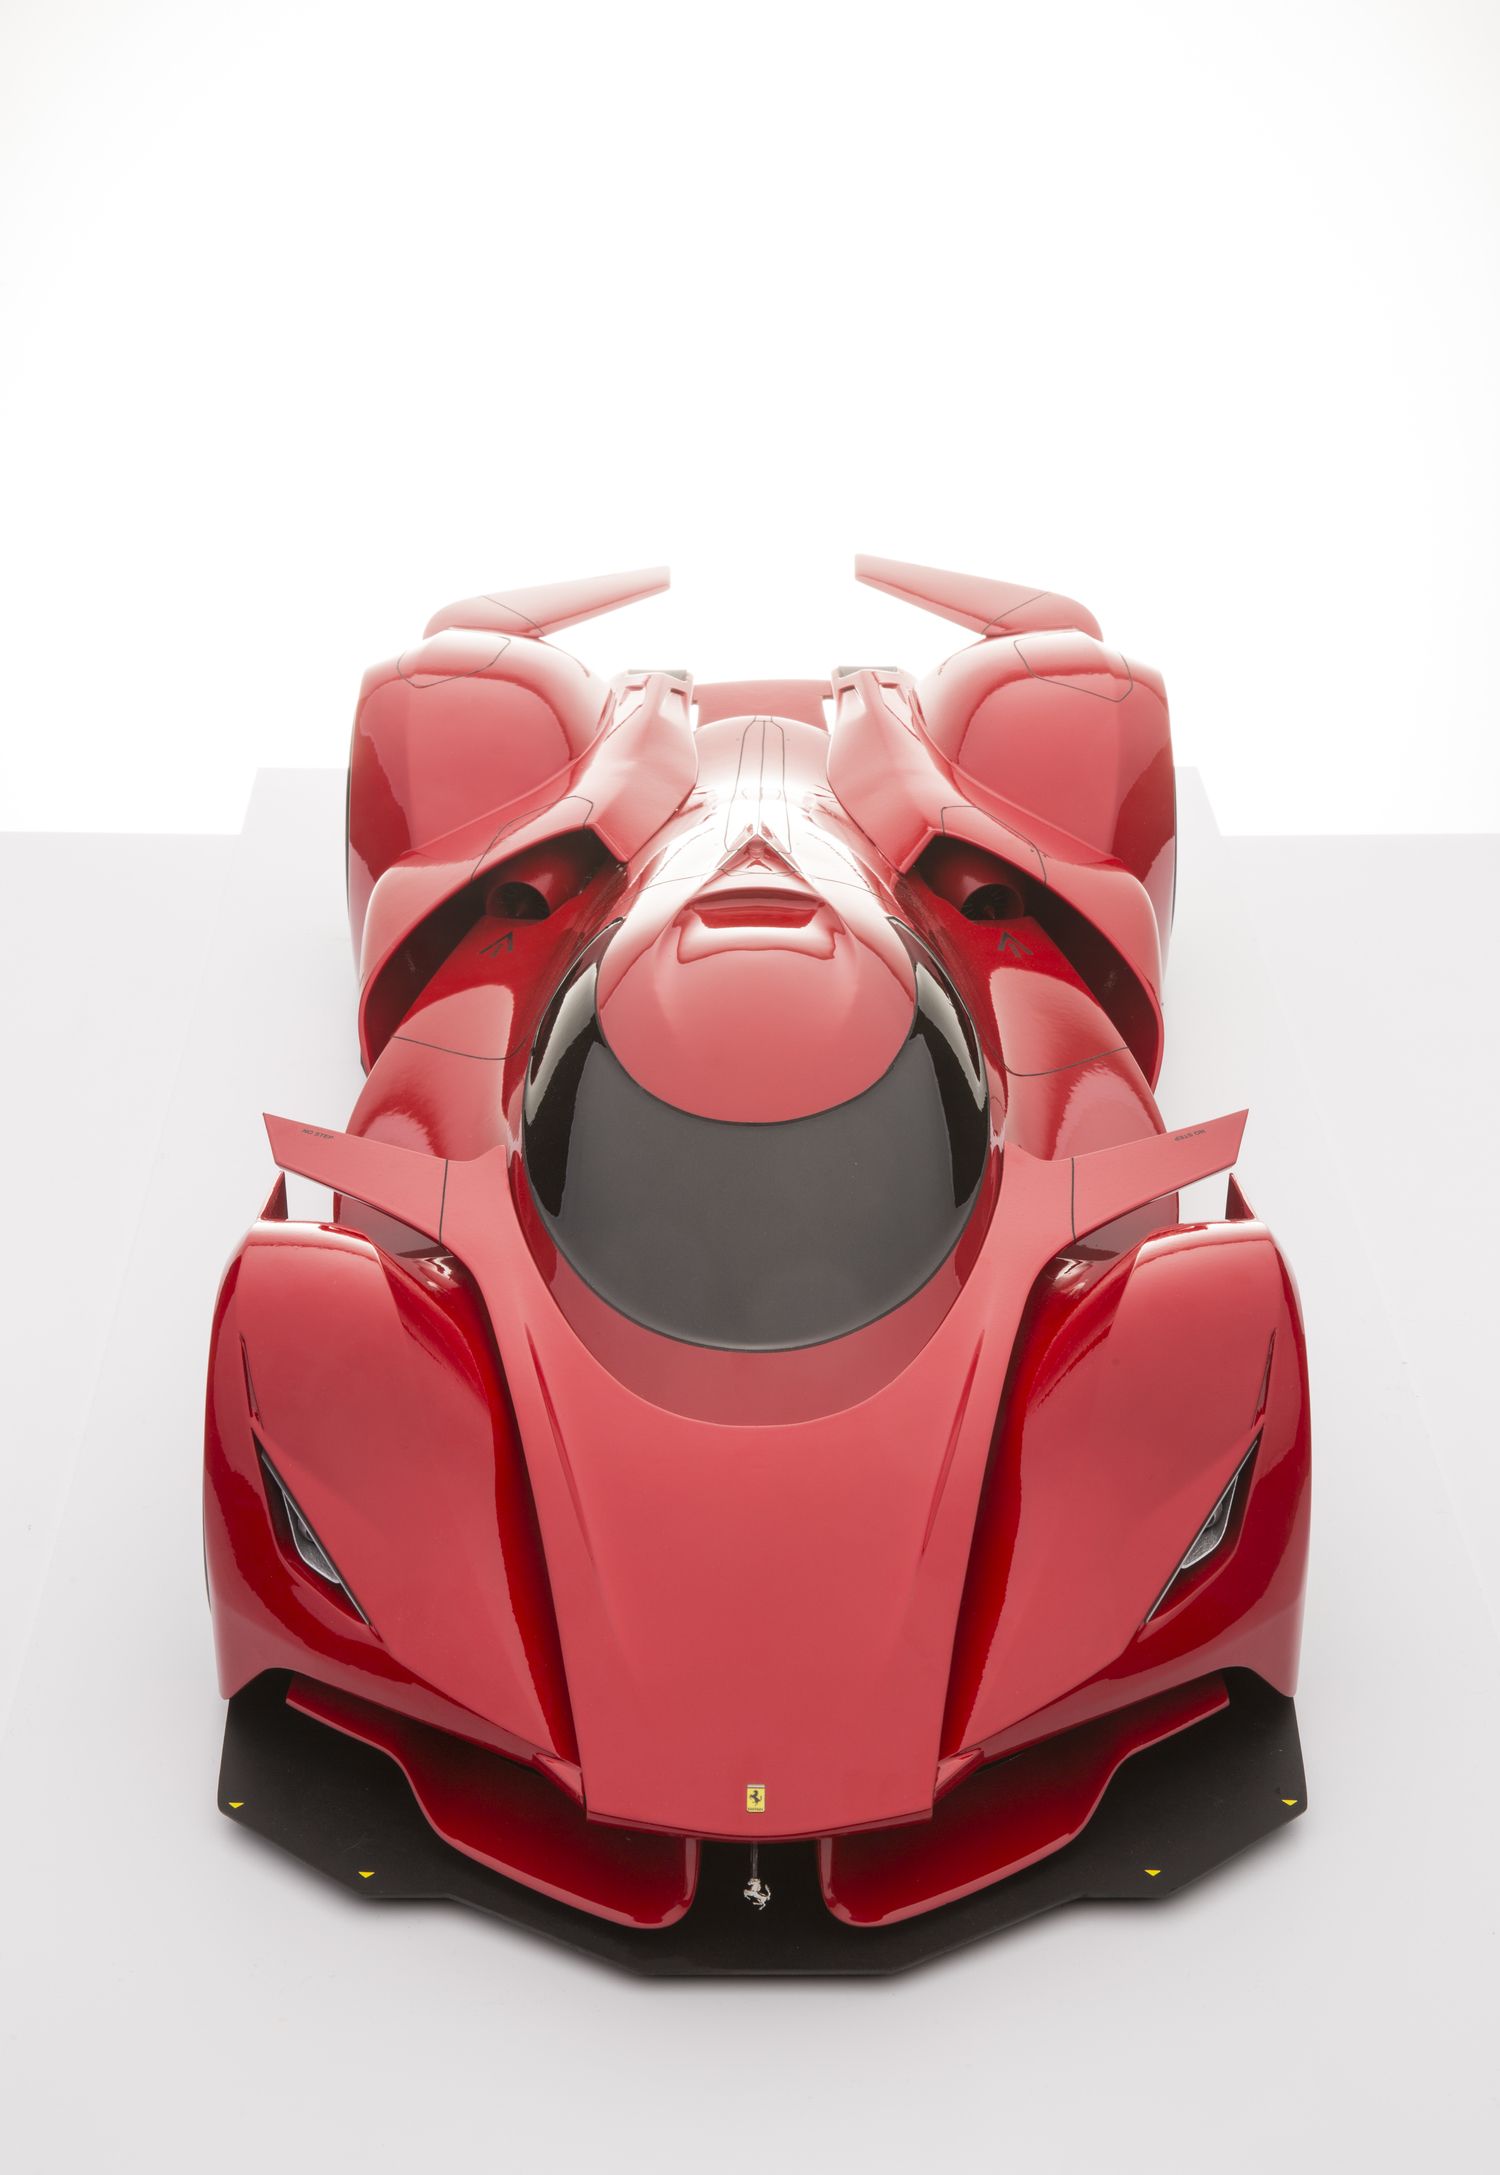 Ferrari Piero T2 LM Stradale — Design